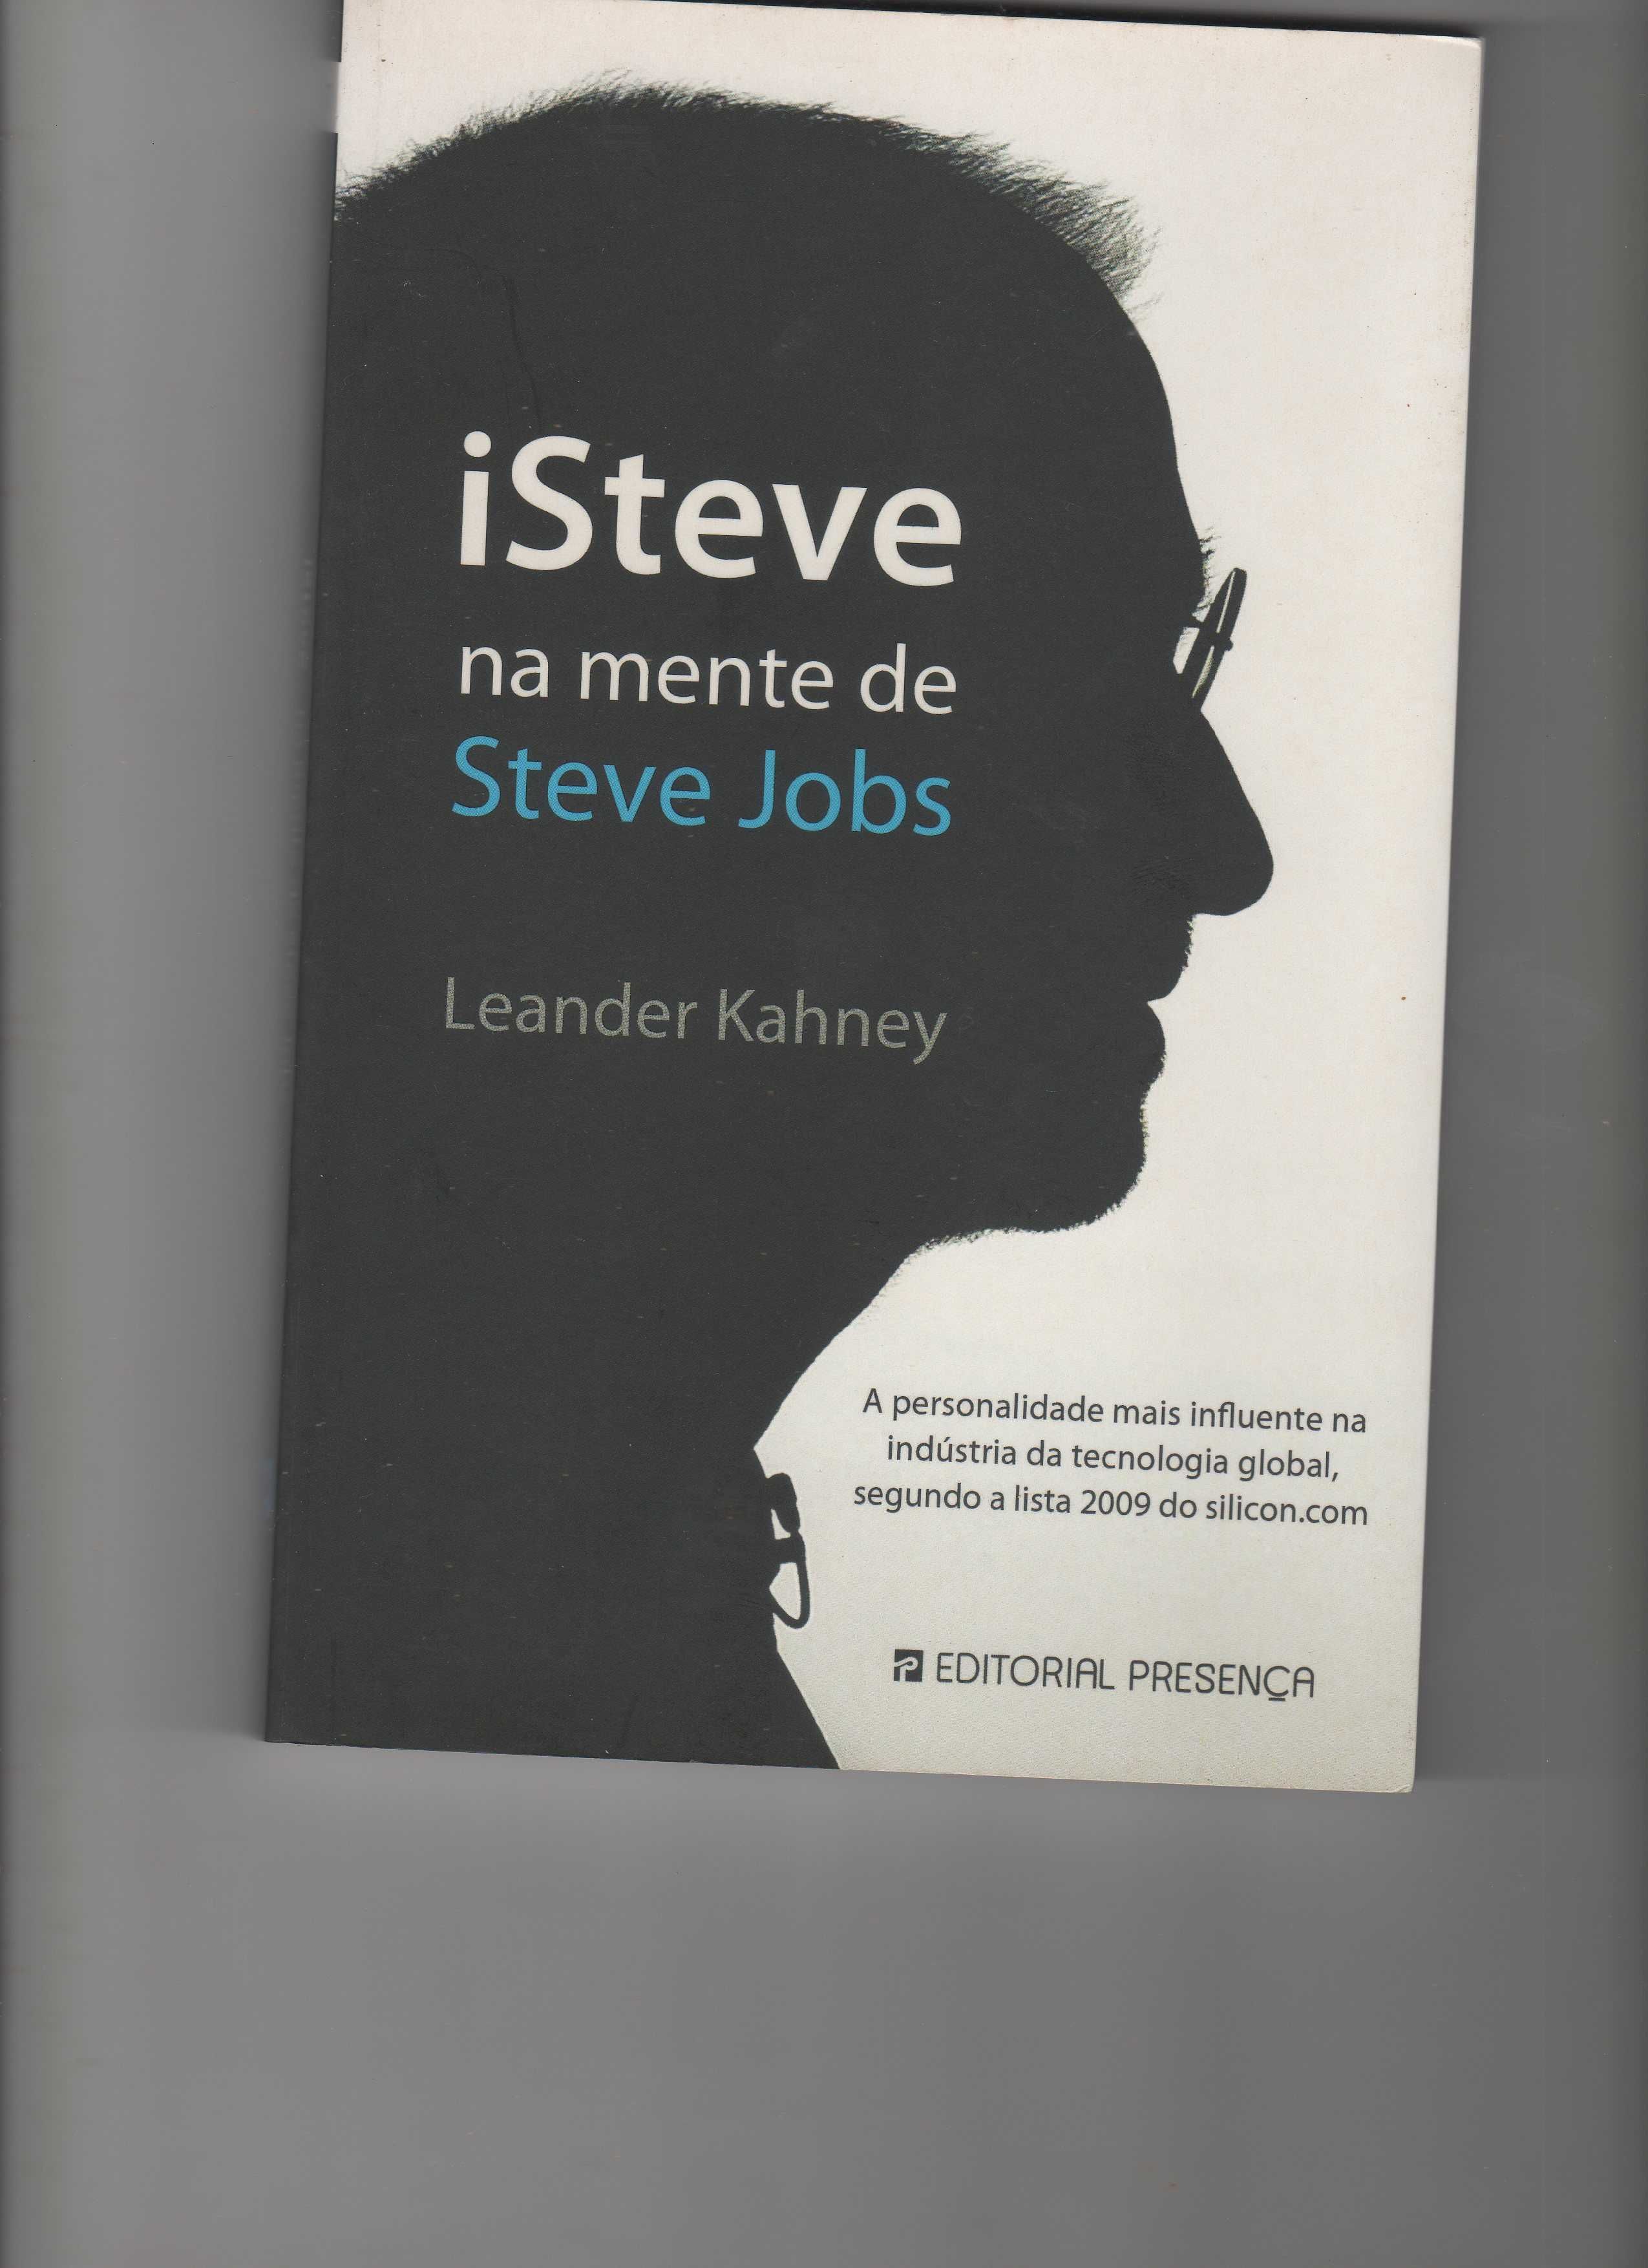 FEIRA DO LIVRO 4 - Livros desde € 1,99 (- 20%) - ATUALIZÁVEL